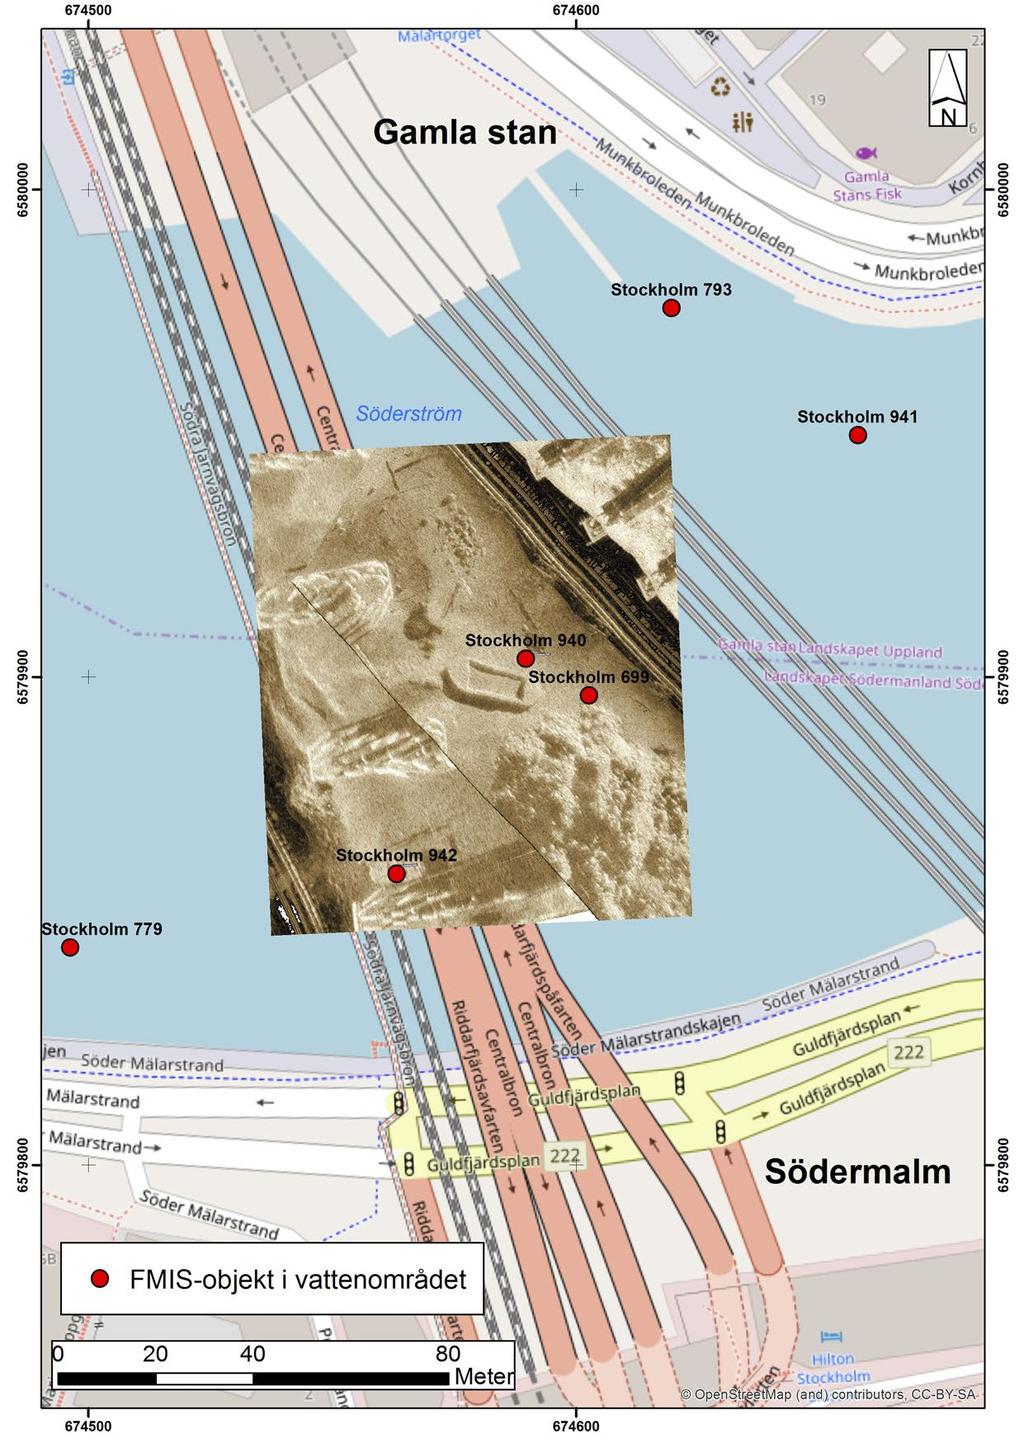 Figur 8. Kartan visar sonarmosaik med de nu aktuella FMIS-objekten Stockholm 940 och 942.